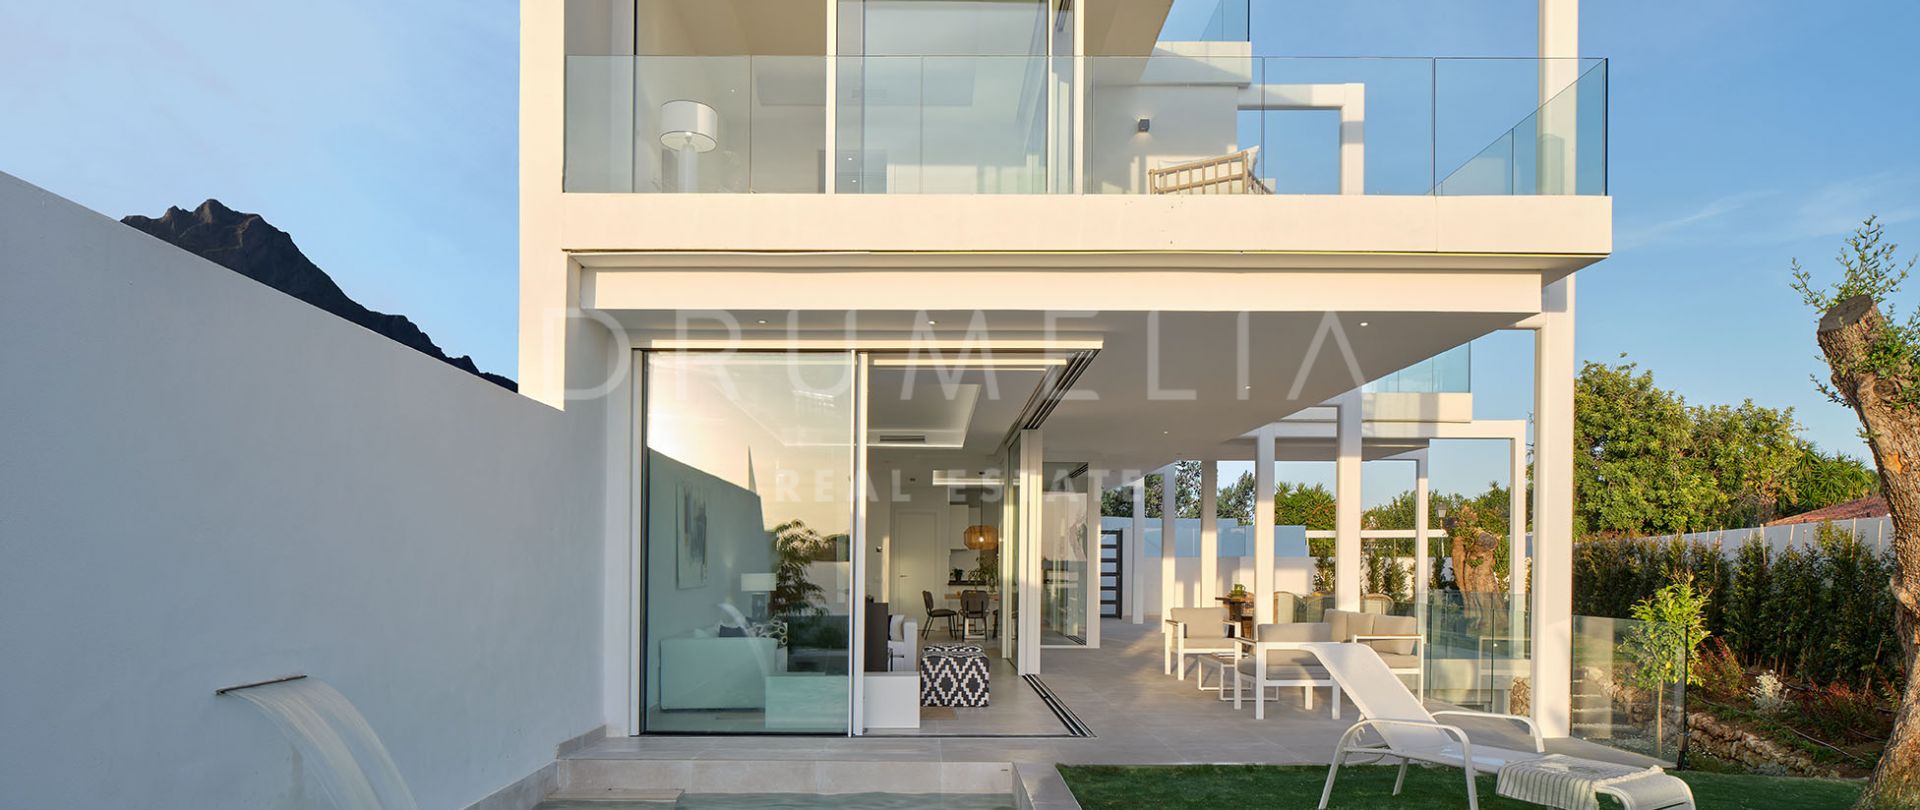 Impresionante casa adosada moderna de lujo con hermosas vistas al mar, Marbella